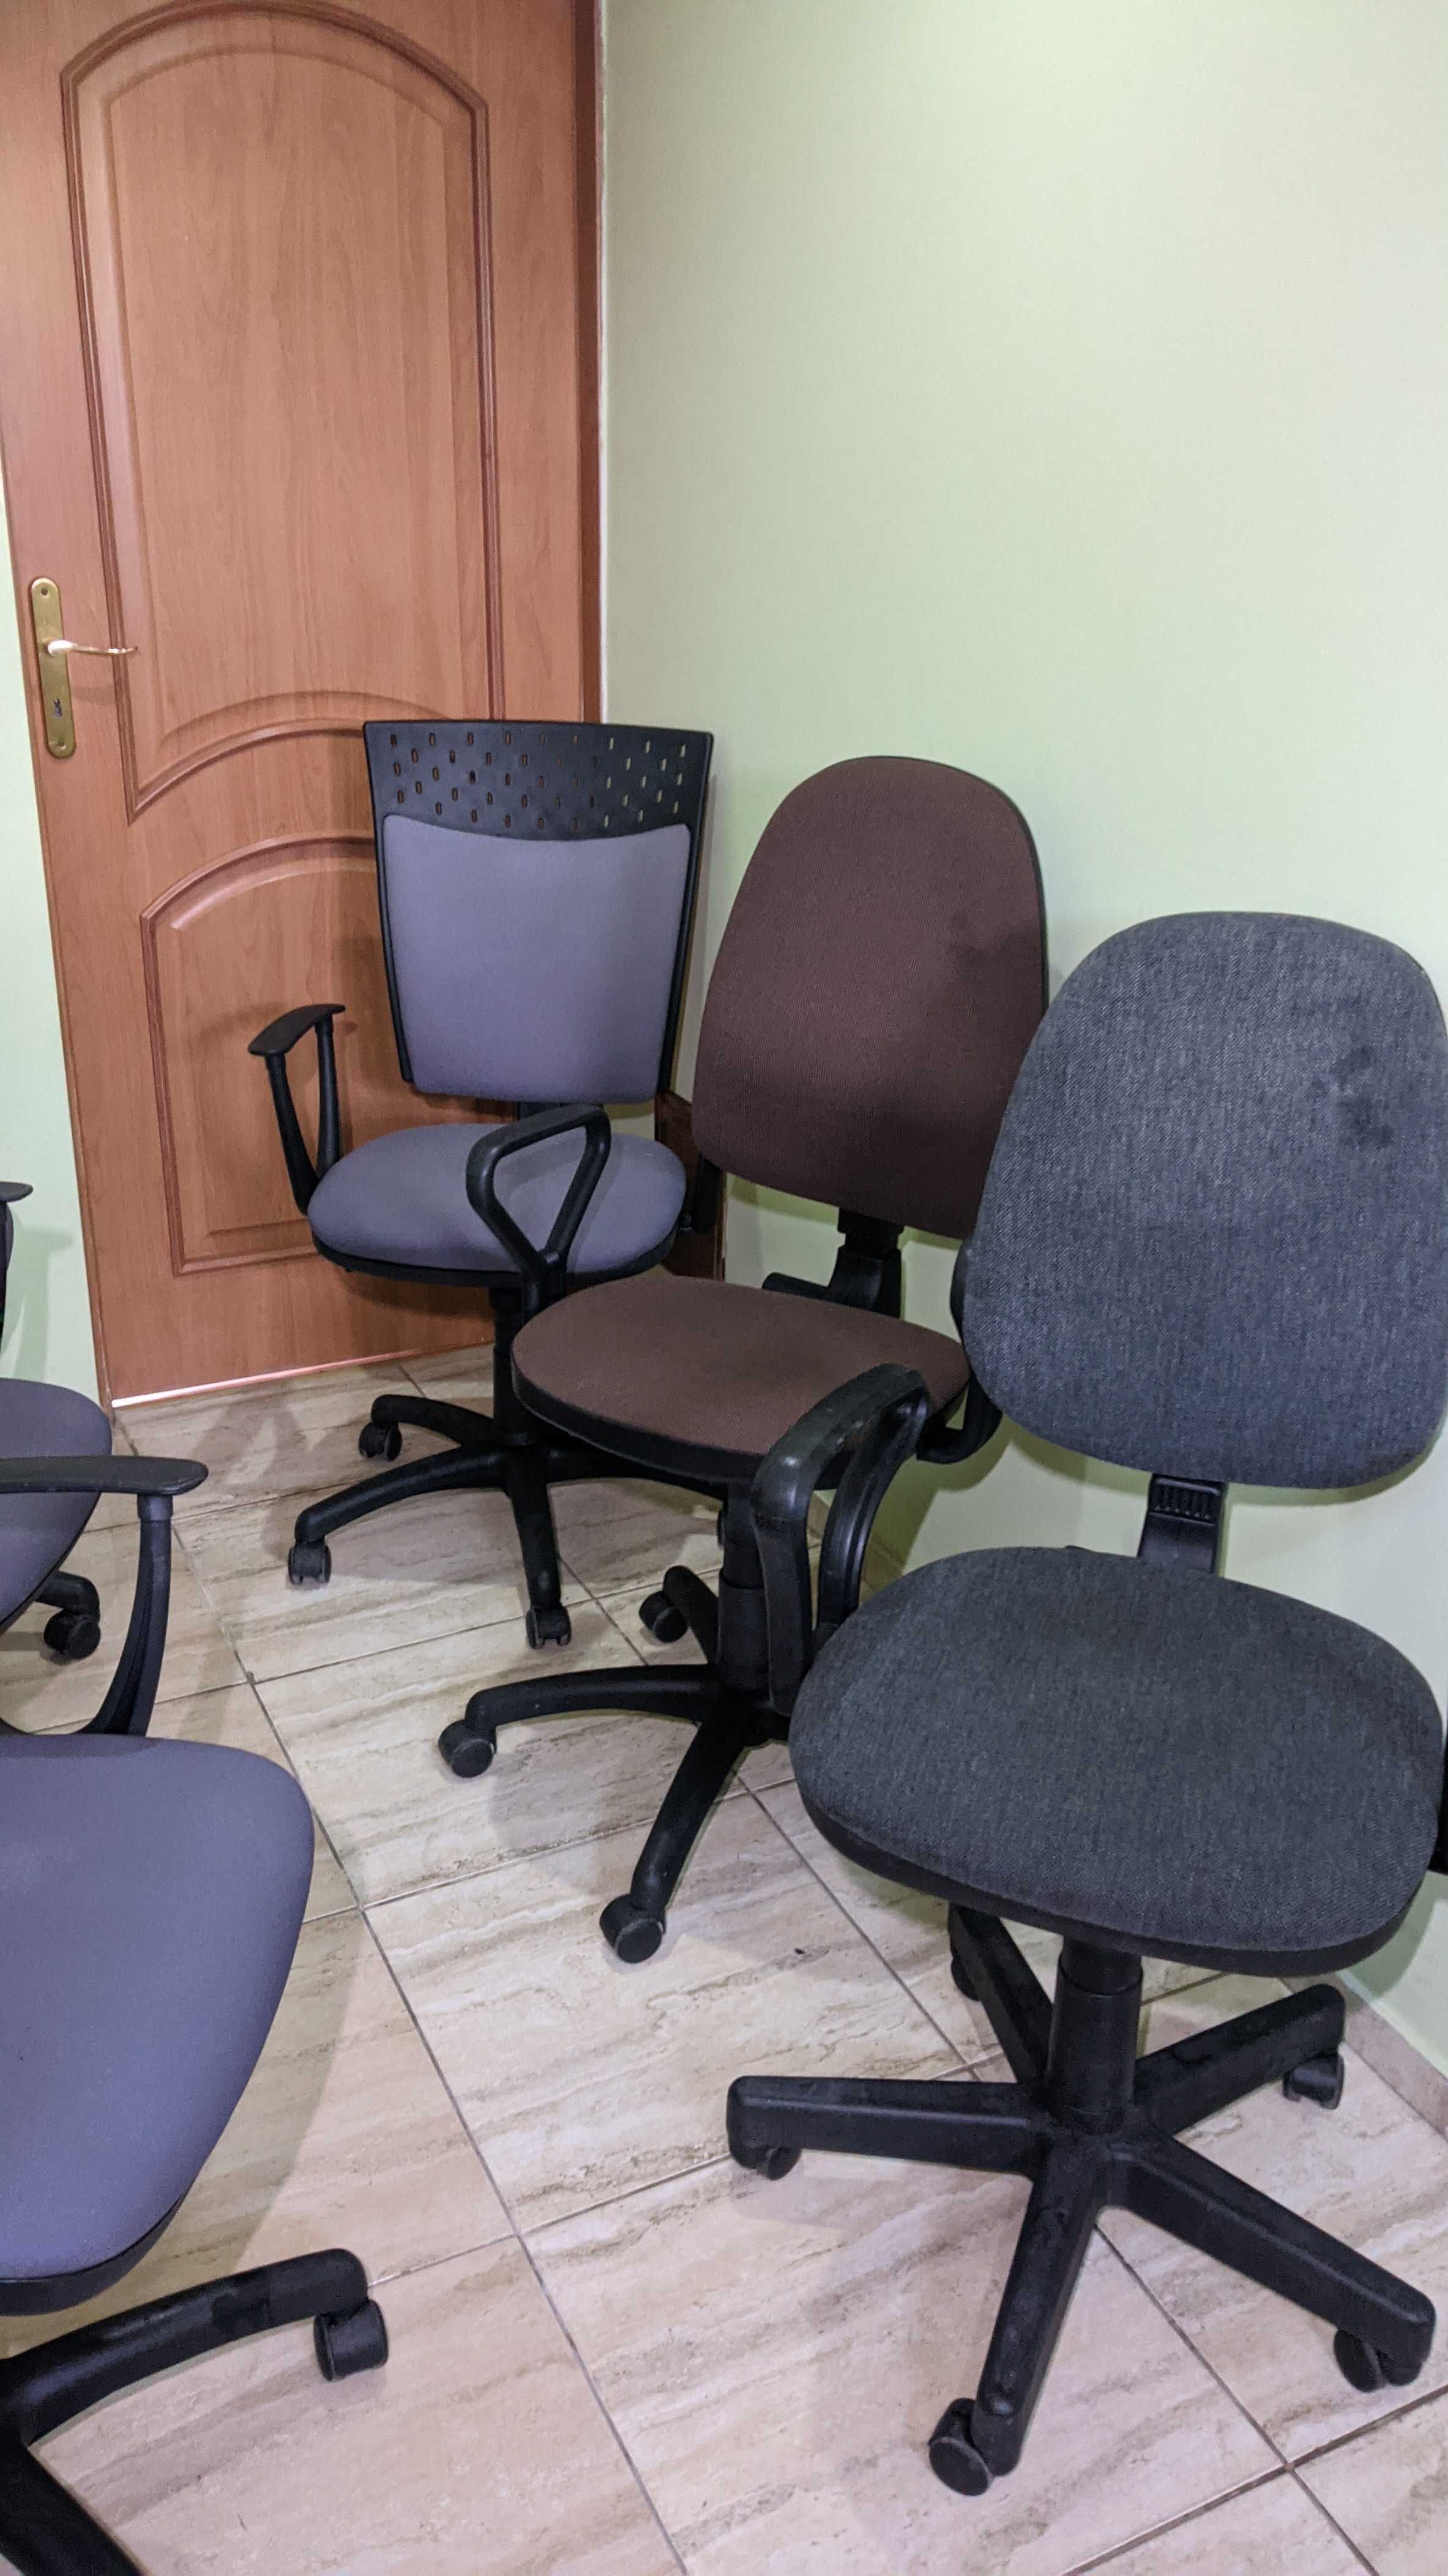 Krzesło - krzesła / fotele biurowe / obrotowe - 60 zł za sztukę